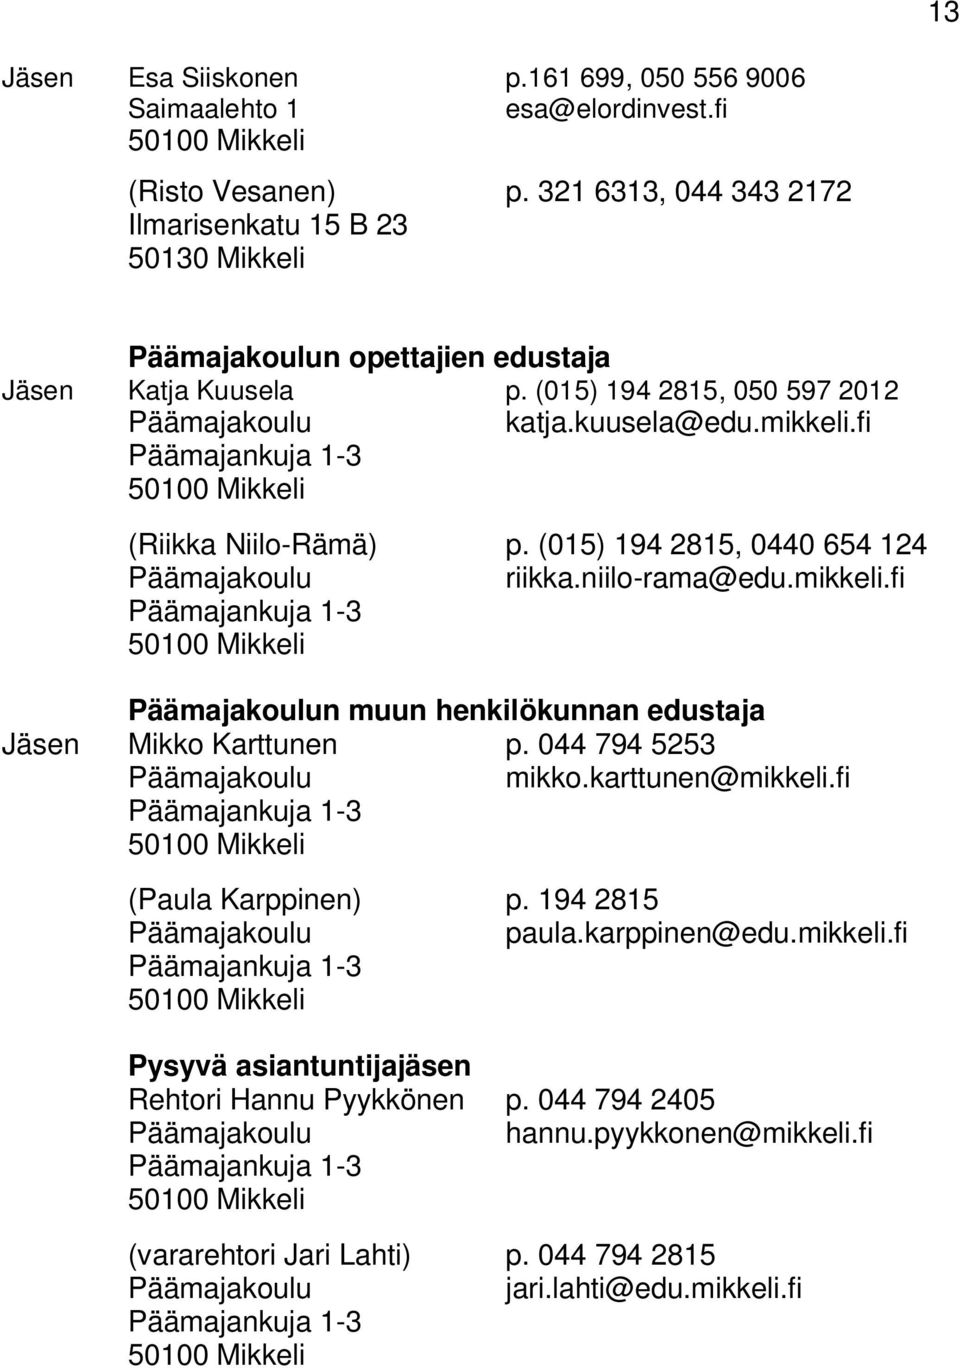 fi Päämajankuja 1-3 50100 Mikkeli (Riikka Niilo-Rämä) p. (015) 194 2815, 0440 654 124 Päämajakoulu riikka.niilo-rama@edu.mikkeli.